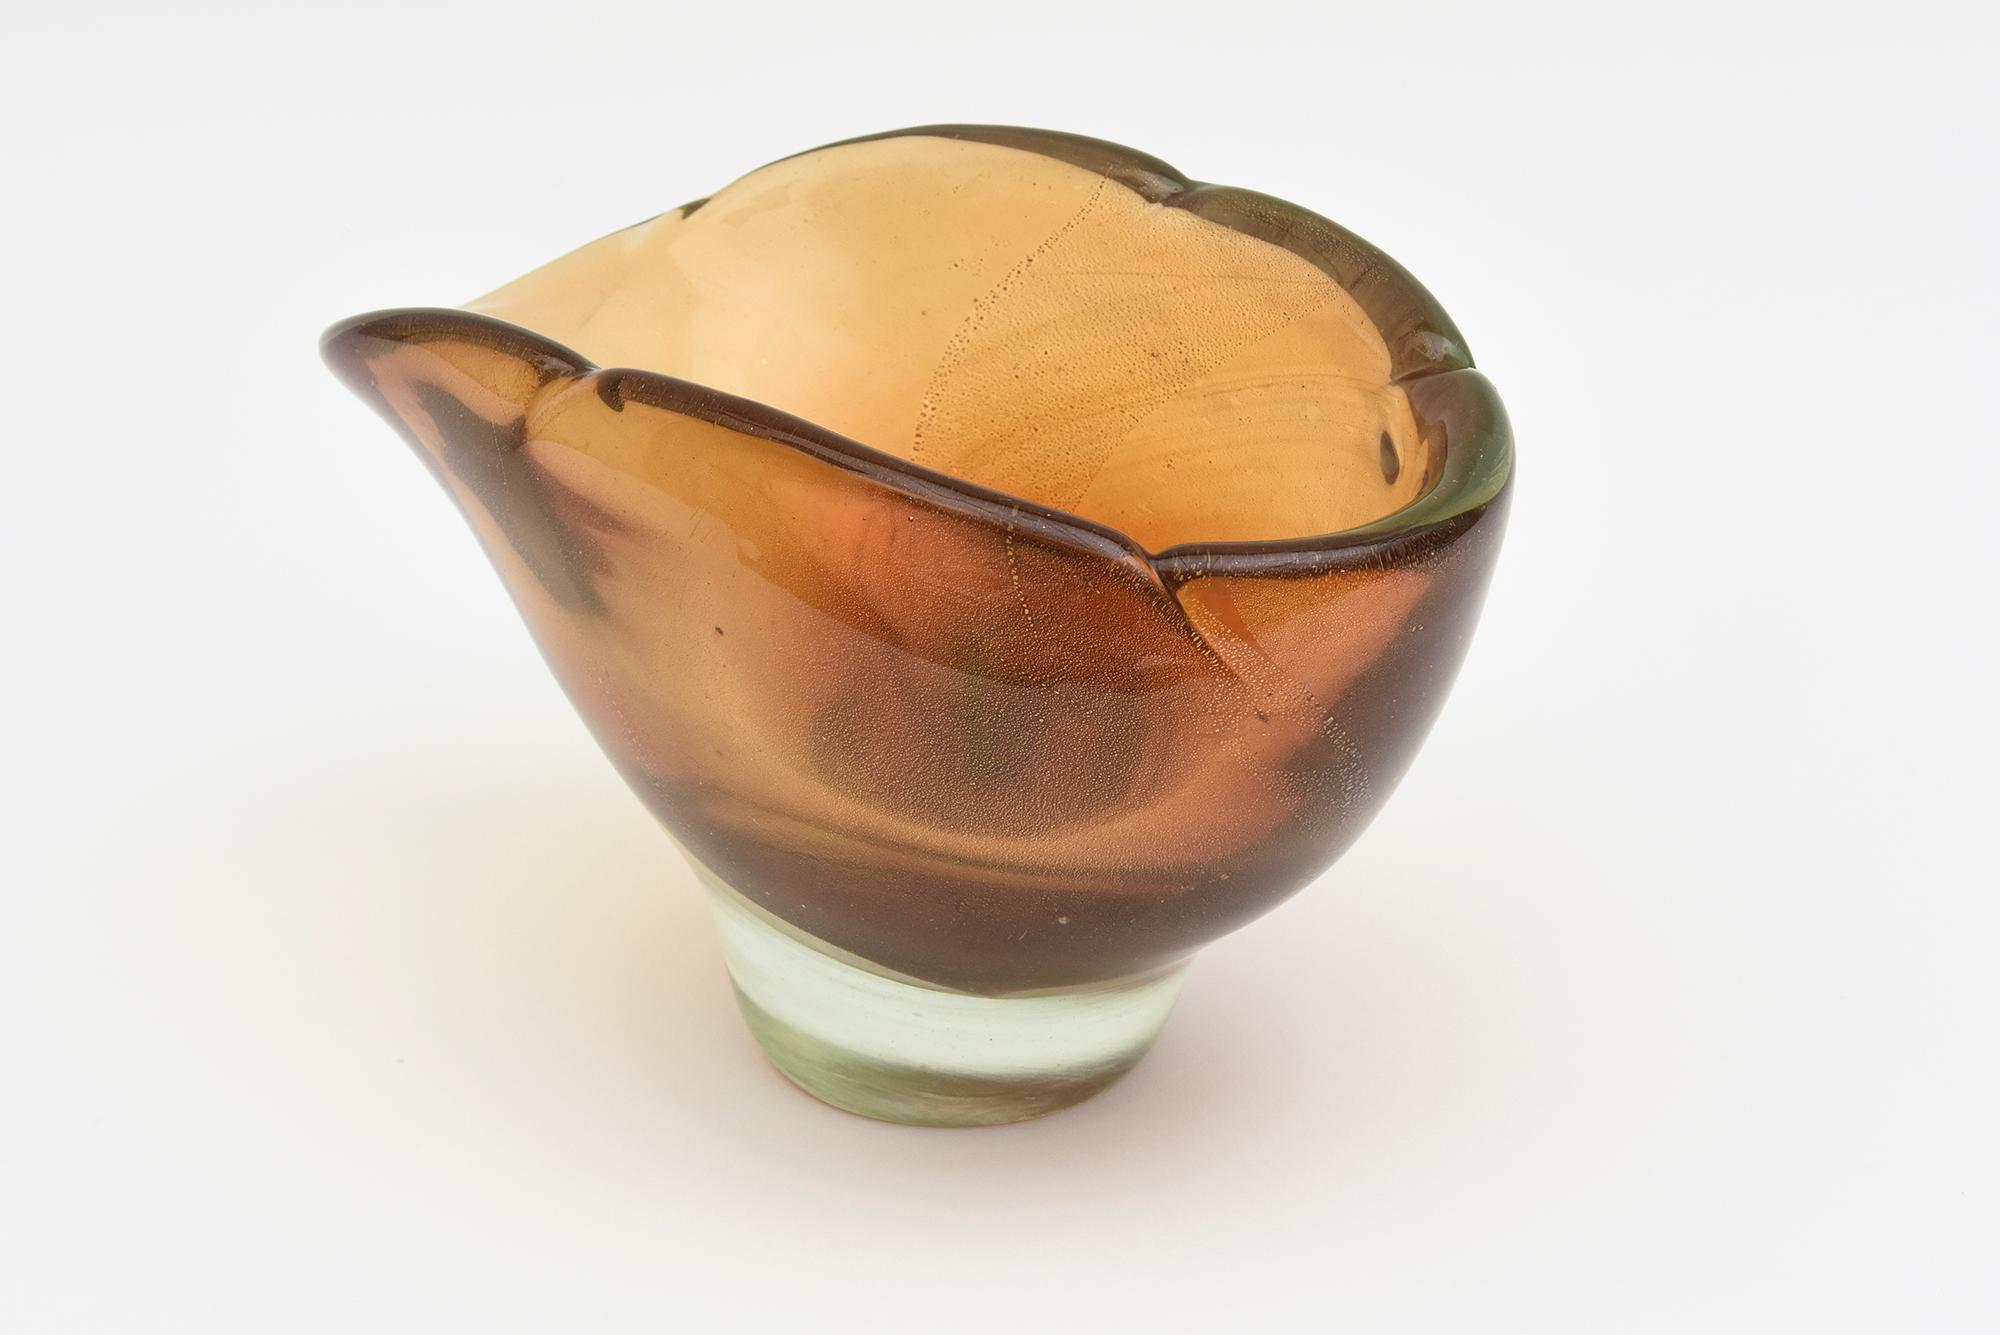 Ce superbe bol en verre soufflé à la main de Murano par Barovier&Toso est de grande taille et à parois épaisses. Il s'agit d'une pièce ancienne datant de la fin des années 40 et du début des années 50. Les couleurs vont de l'ambre au brun clair sous